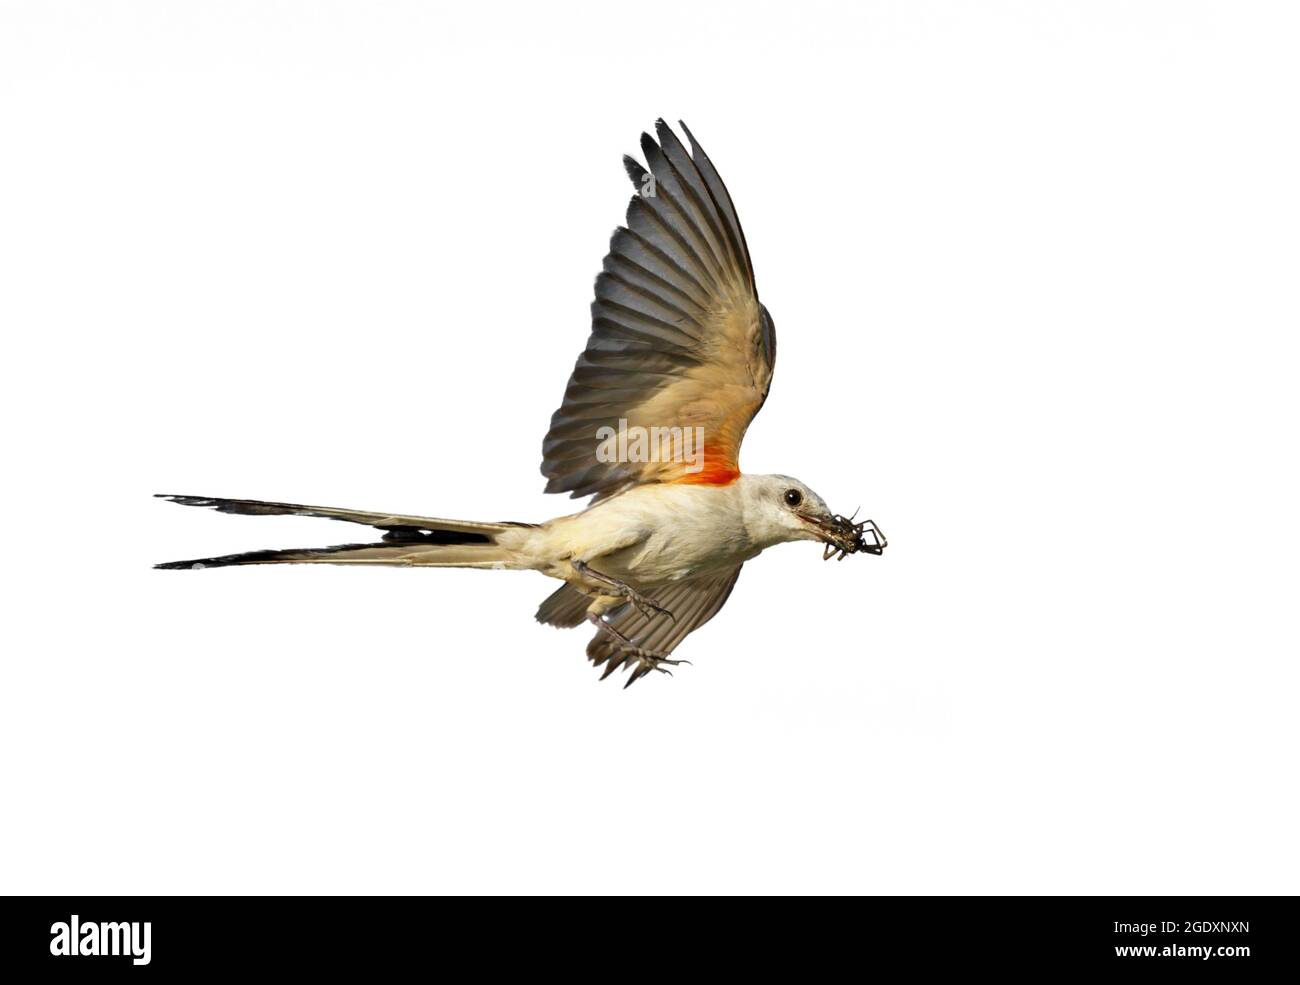 Flycatcher con coda a forbice (Tyrannus forficatus) che vola con un insetto nel becco, isolato su sfondo bianco. Foto Stock